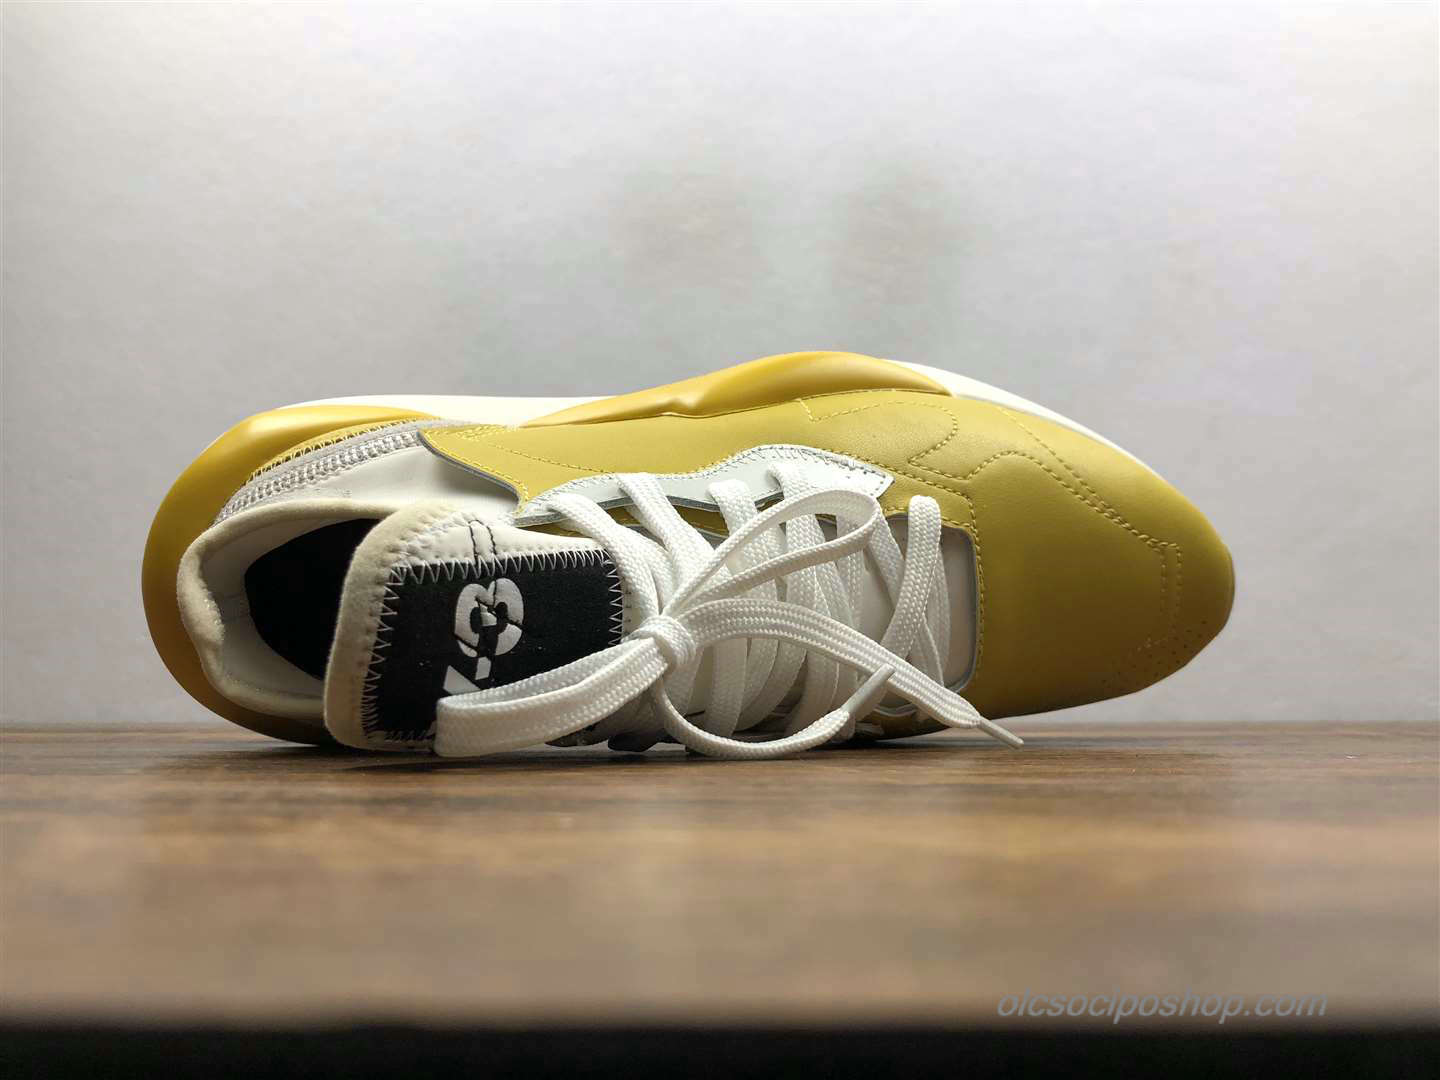 Yohji Yamamoto x Adidas Y-3 Kaiwa Chunky Sárga/Piszkosfehér Cipők (M3180)